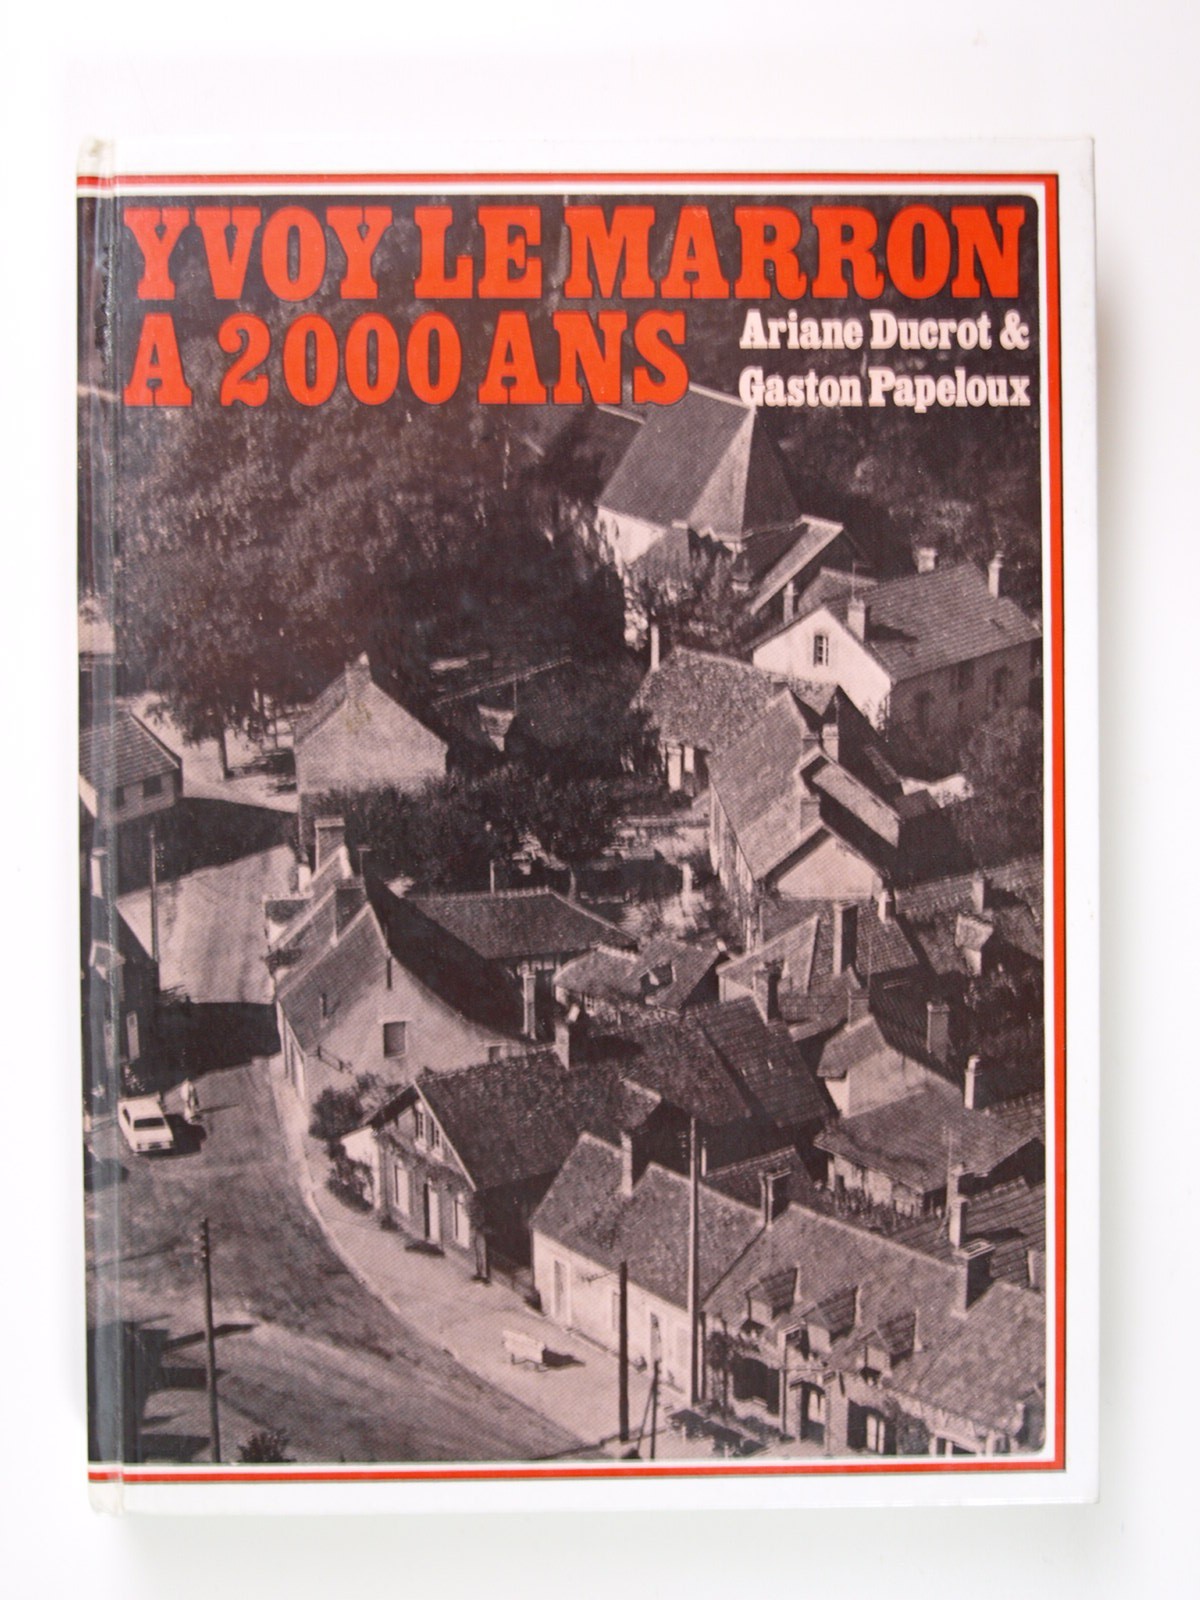 PAPELOUX Gaston et DUCROT Ariane : Yvoy-le-Marron a 2000 ans.